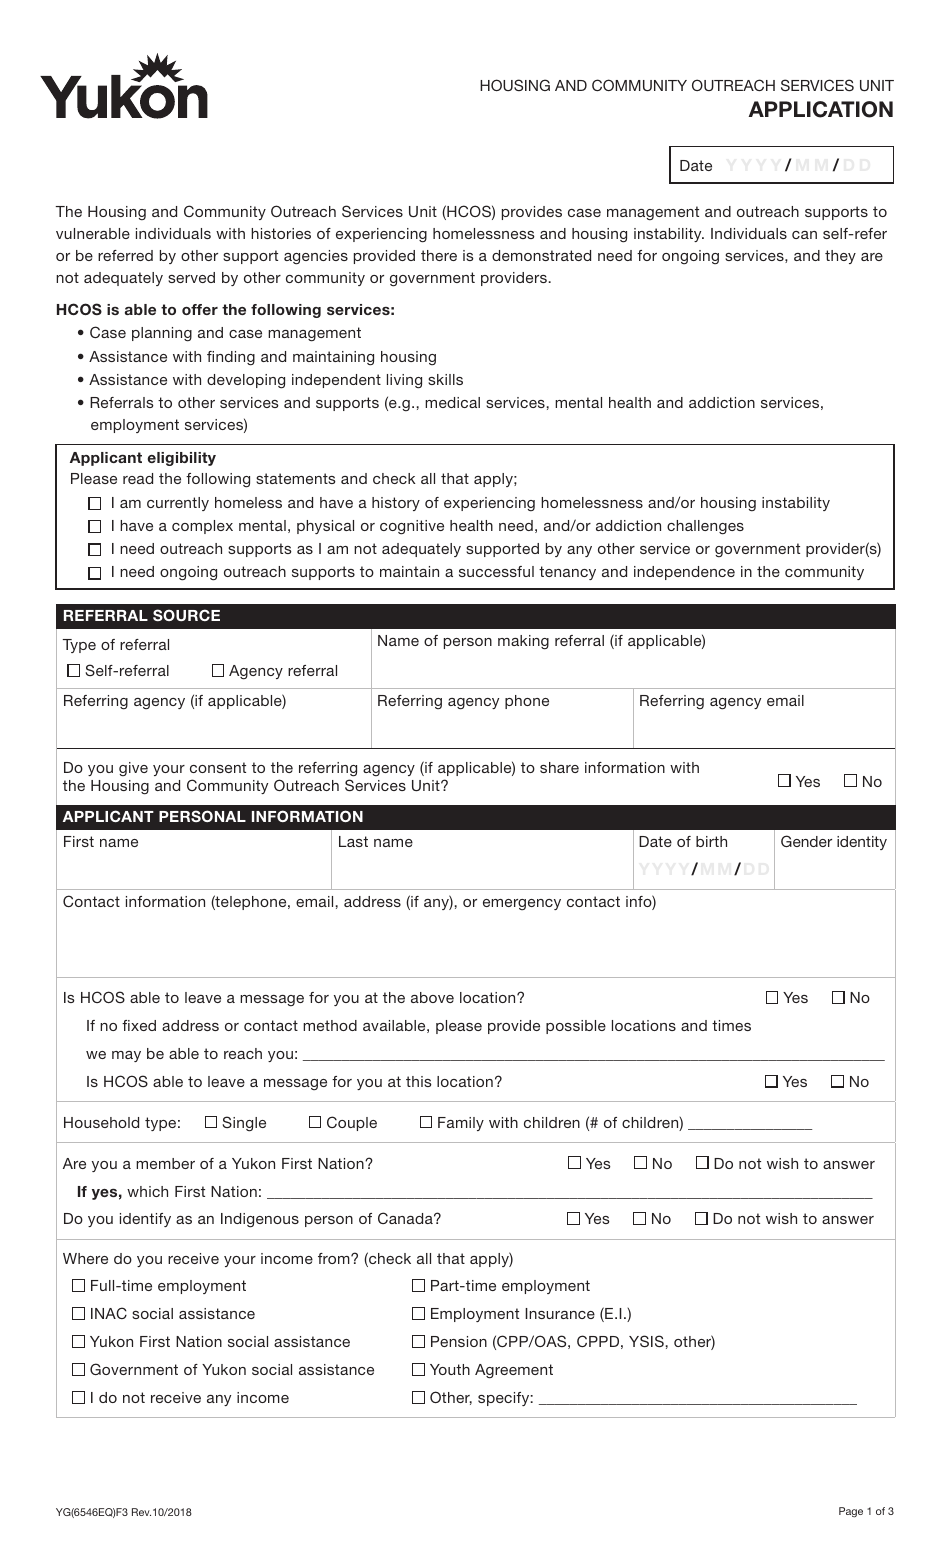 Form YG6546 Application - Hcos Unit - Yukon, Canada, Page 1